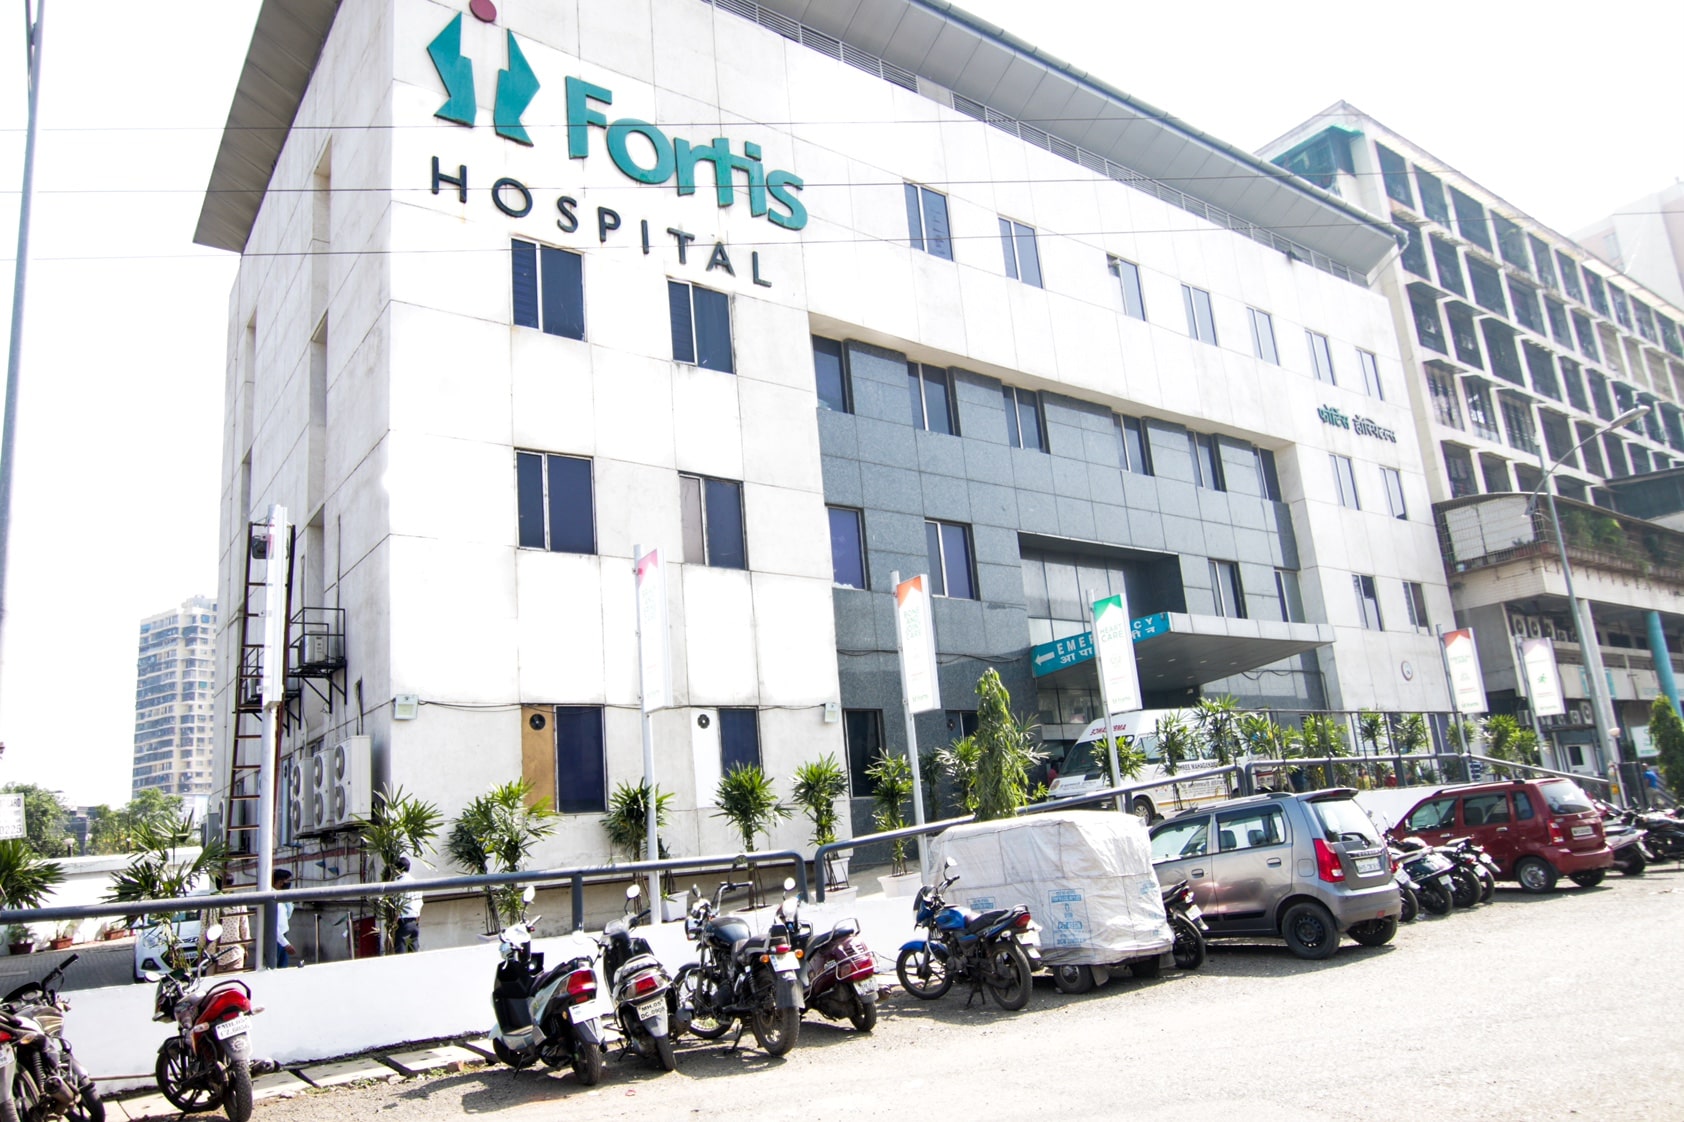 Fortis Hospital, Kalyan, Thane